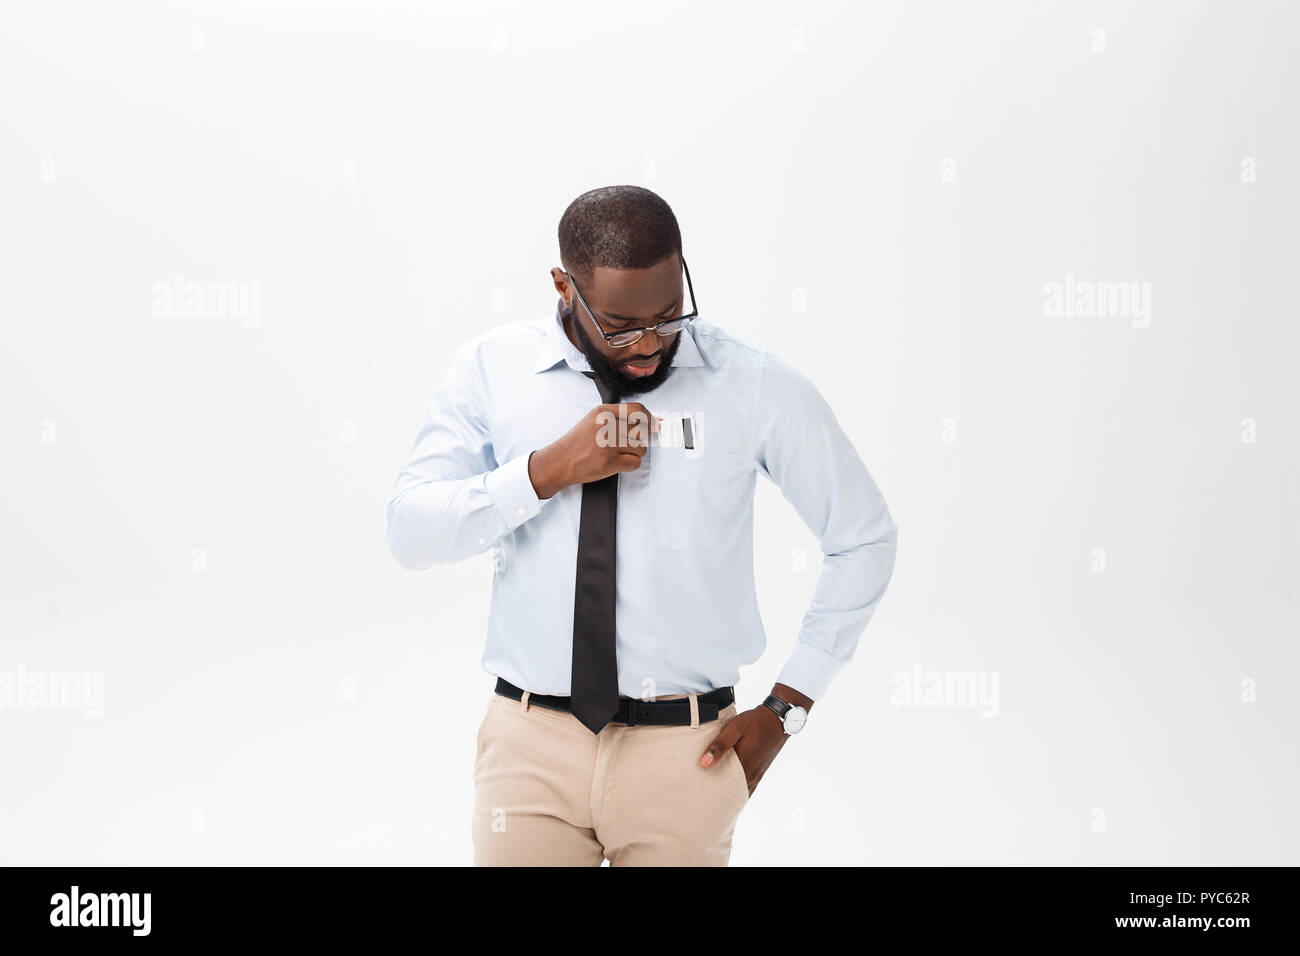 Portrait von wütend oder verärgert junge afrikanische amerikanische Mann im weißen Poloshirt in die Kamera schaut mit Missfallen Ausdruck. Negative menschliche Ausdrücke, Emotionen, Gefühle. Körpersprache. Stockfoto